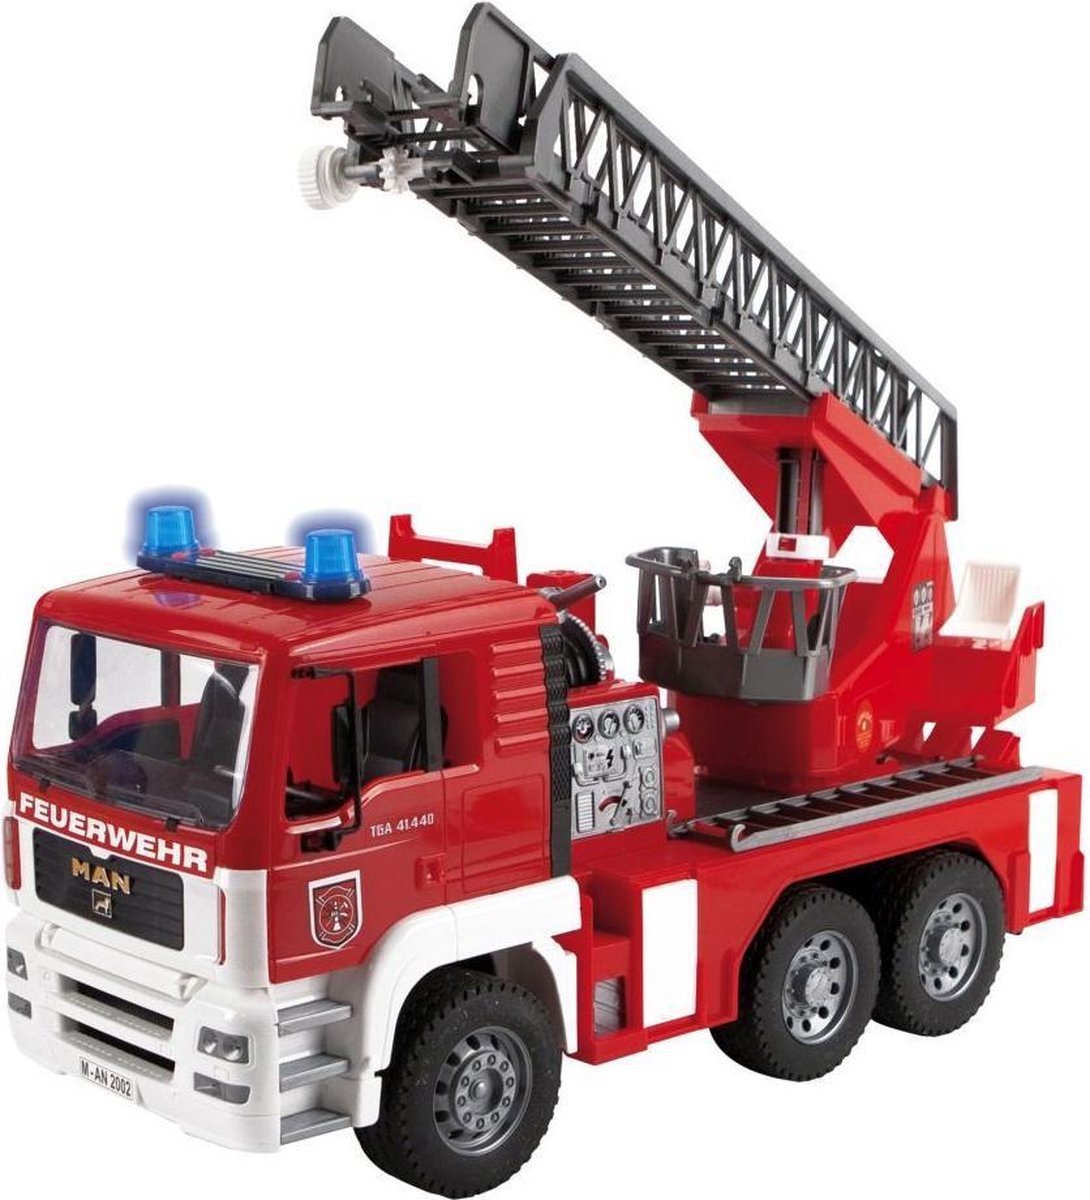 Overall beste brandweerwagen- Bruder MAN Brandweerwagen met Draailadder